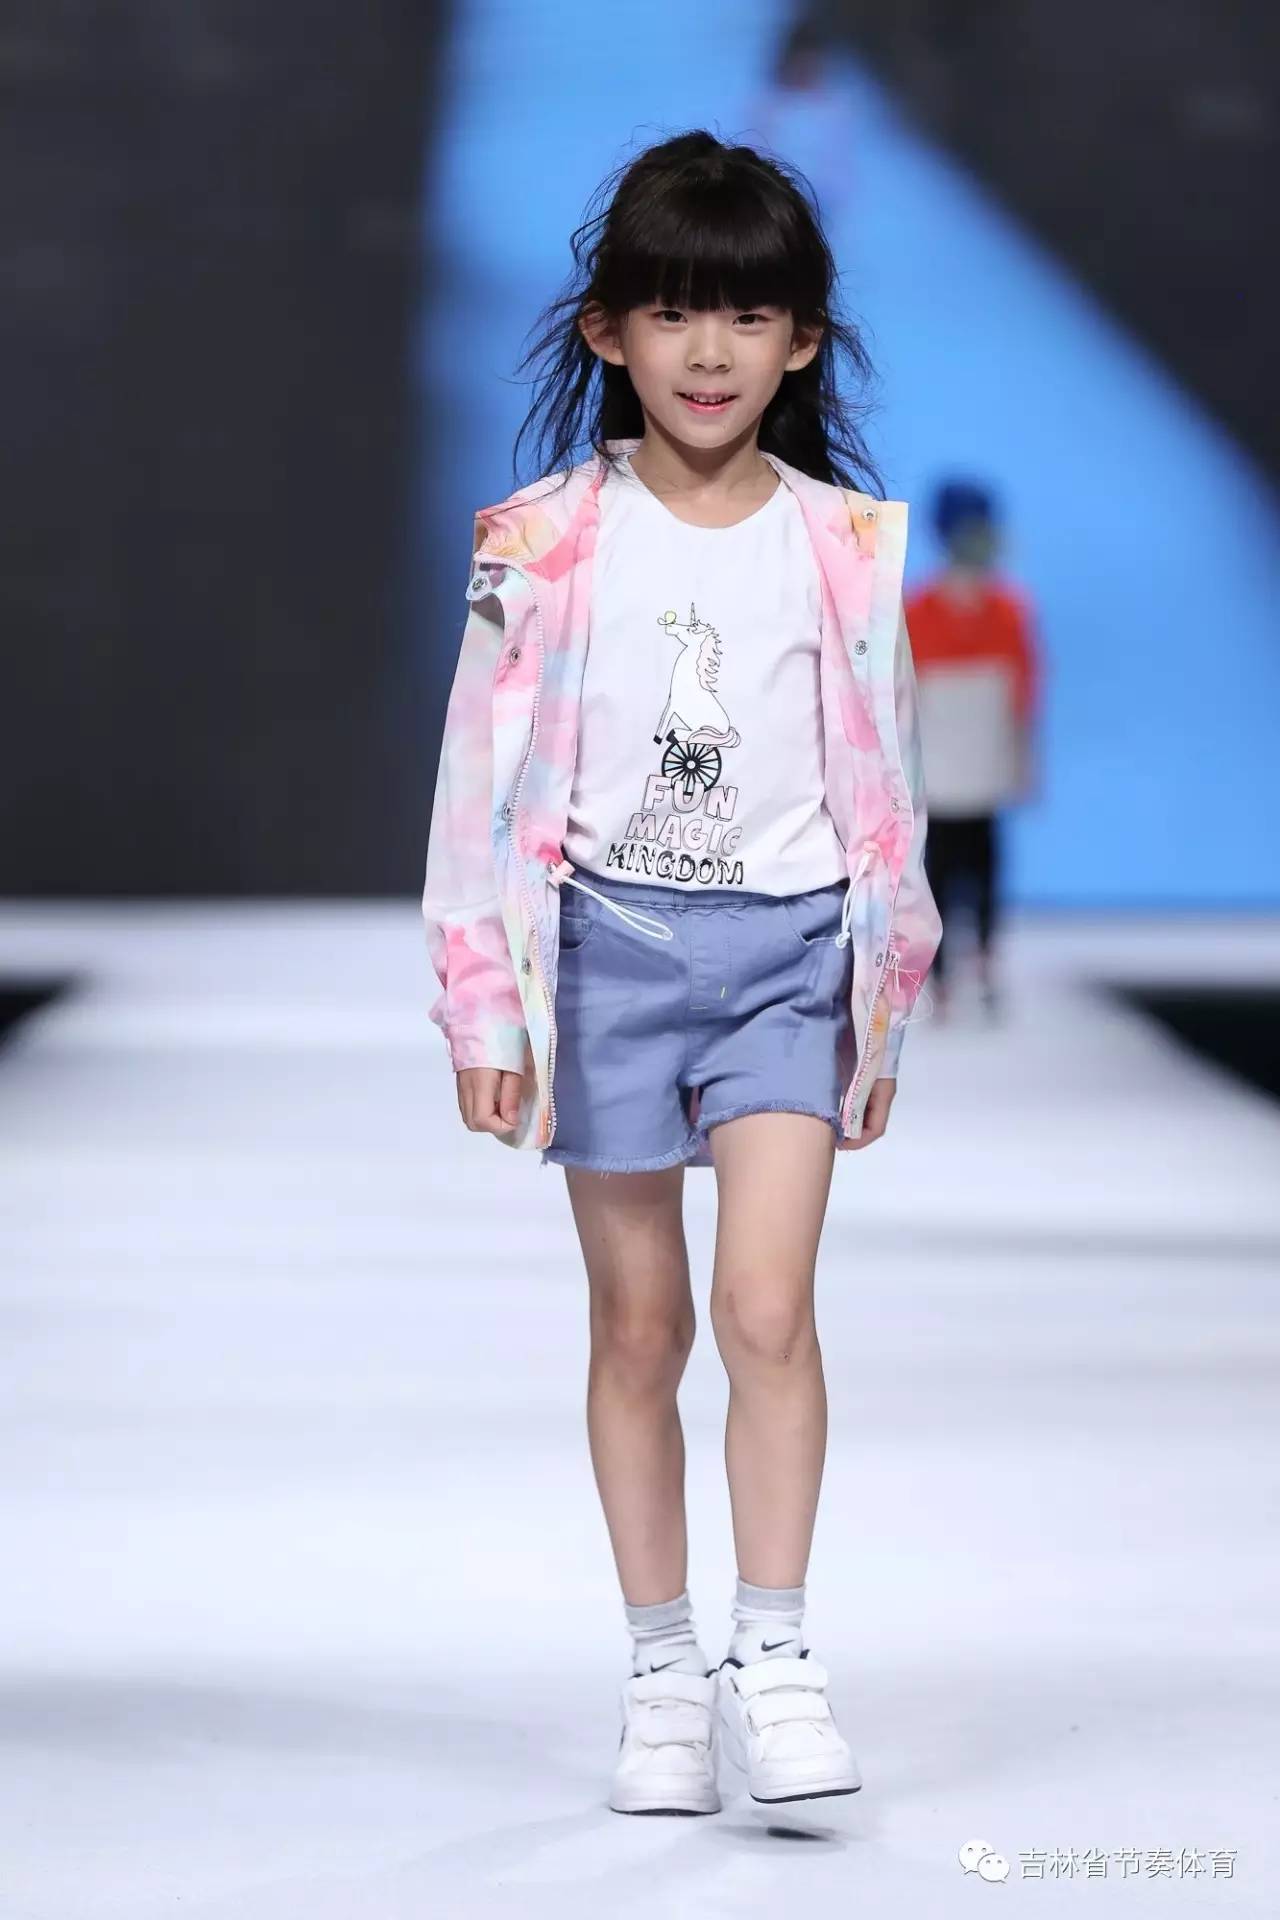 2017上海国际少儿模特大赛 -- 万豪杯·长春赛